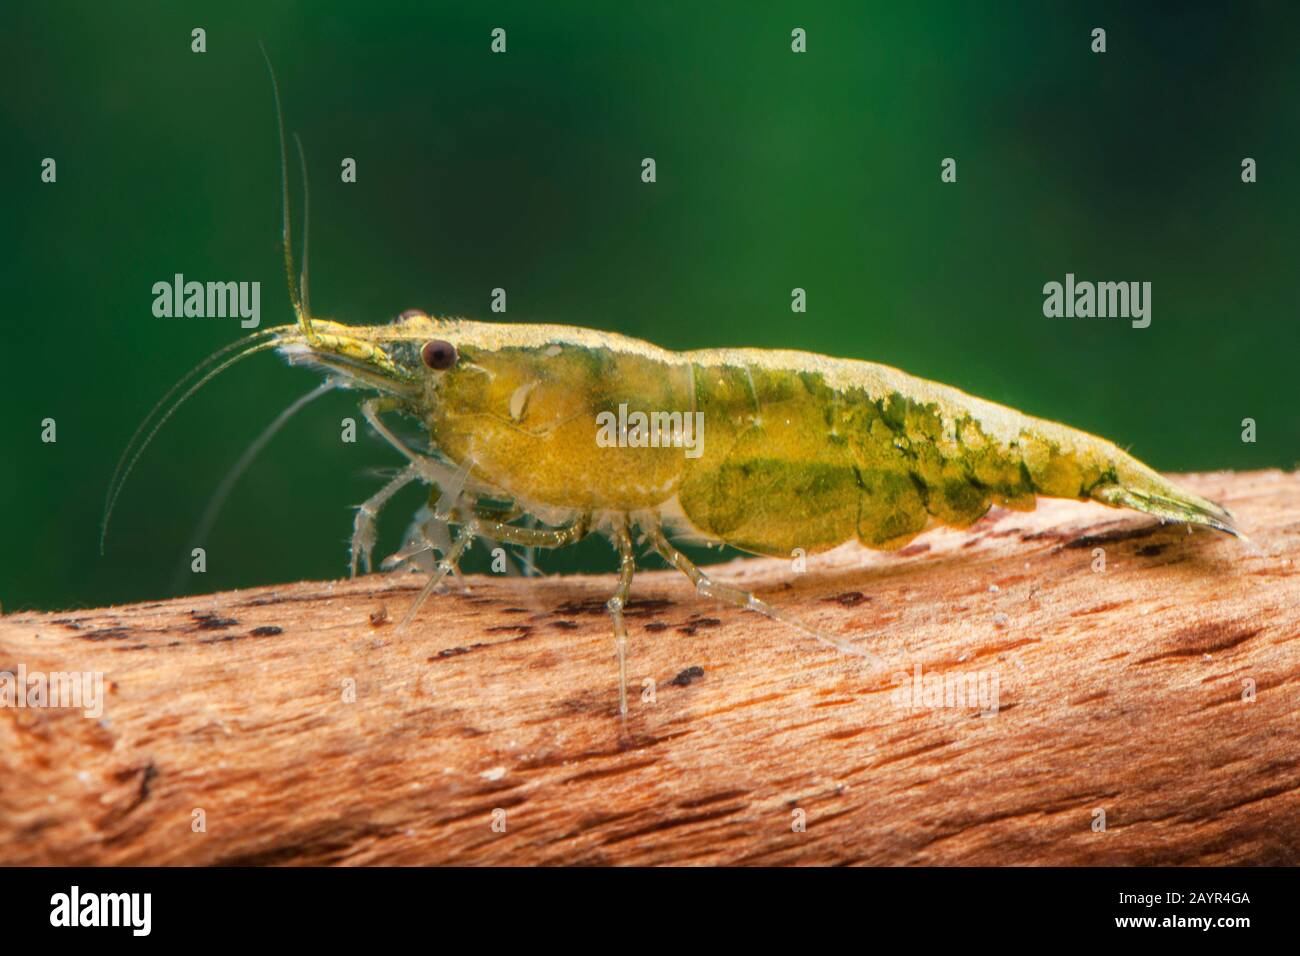 Cherry shrimp, Dwarf shrimp (Neocaridina davidi, Neocaridina heteropoda), lateral view, Green Jade Stock Photo